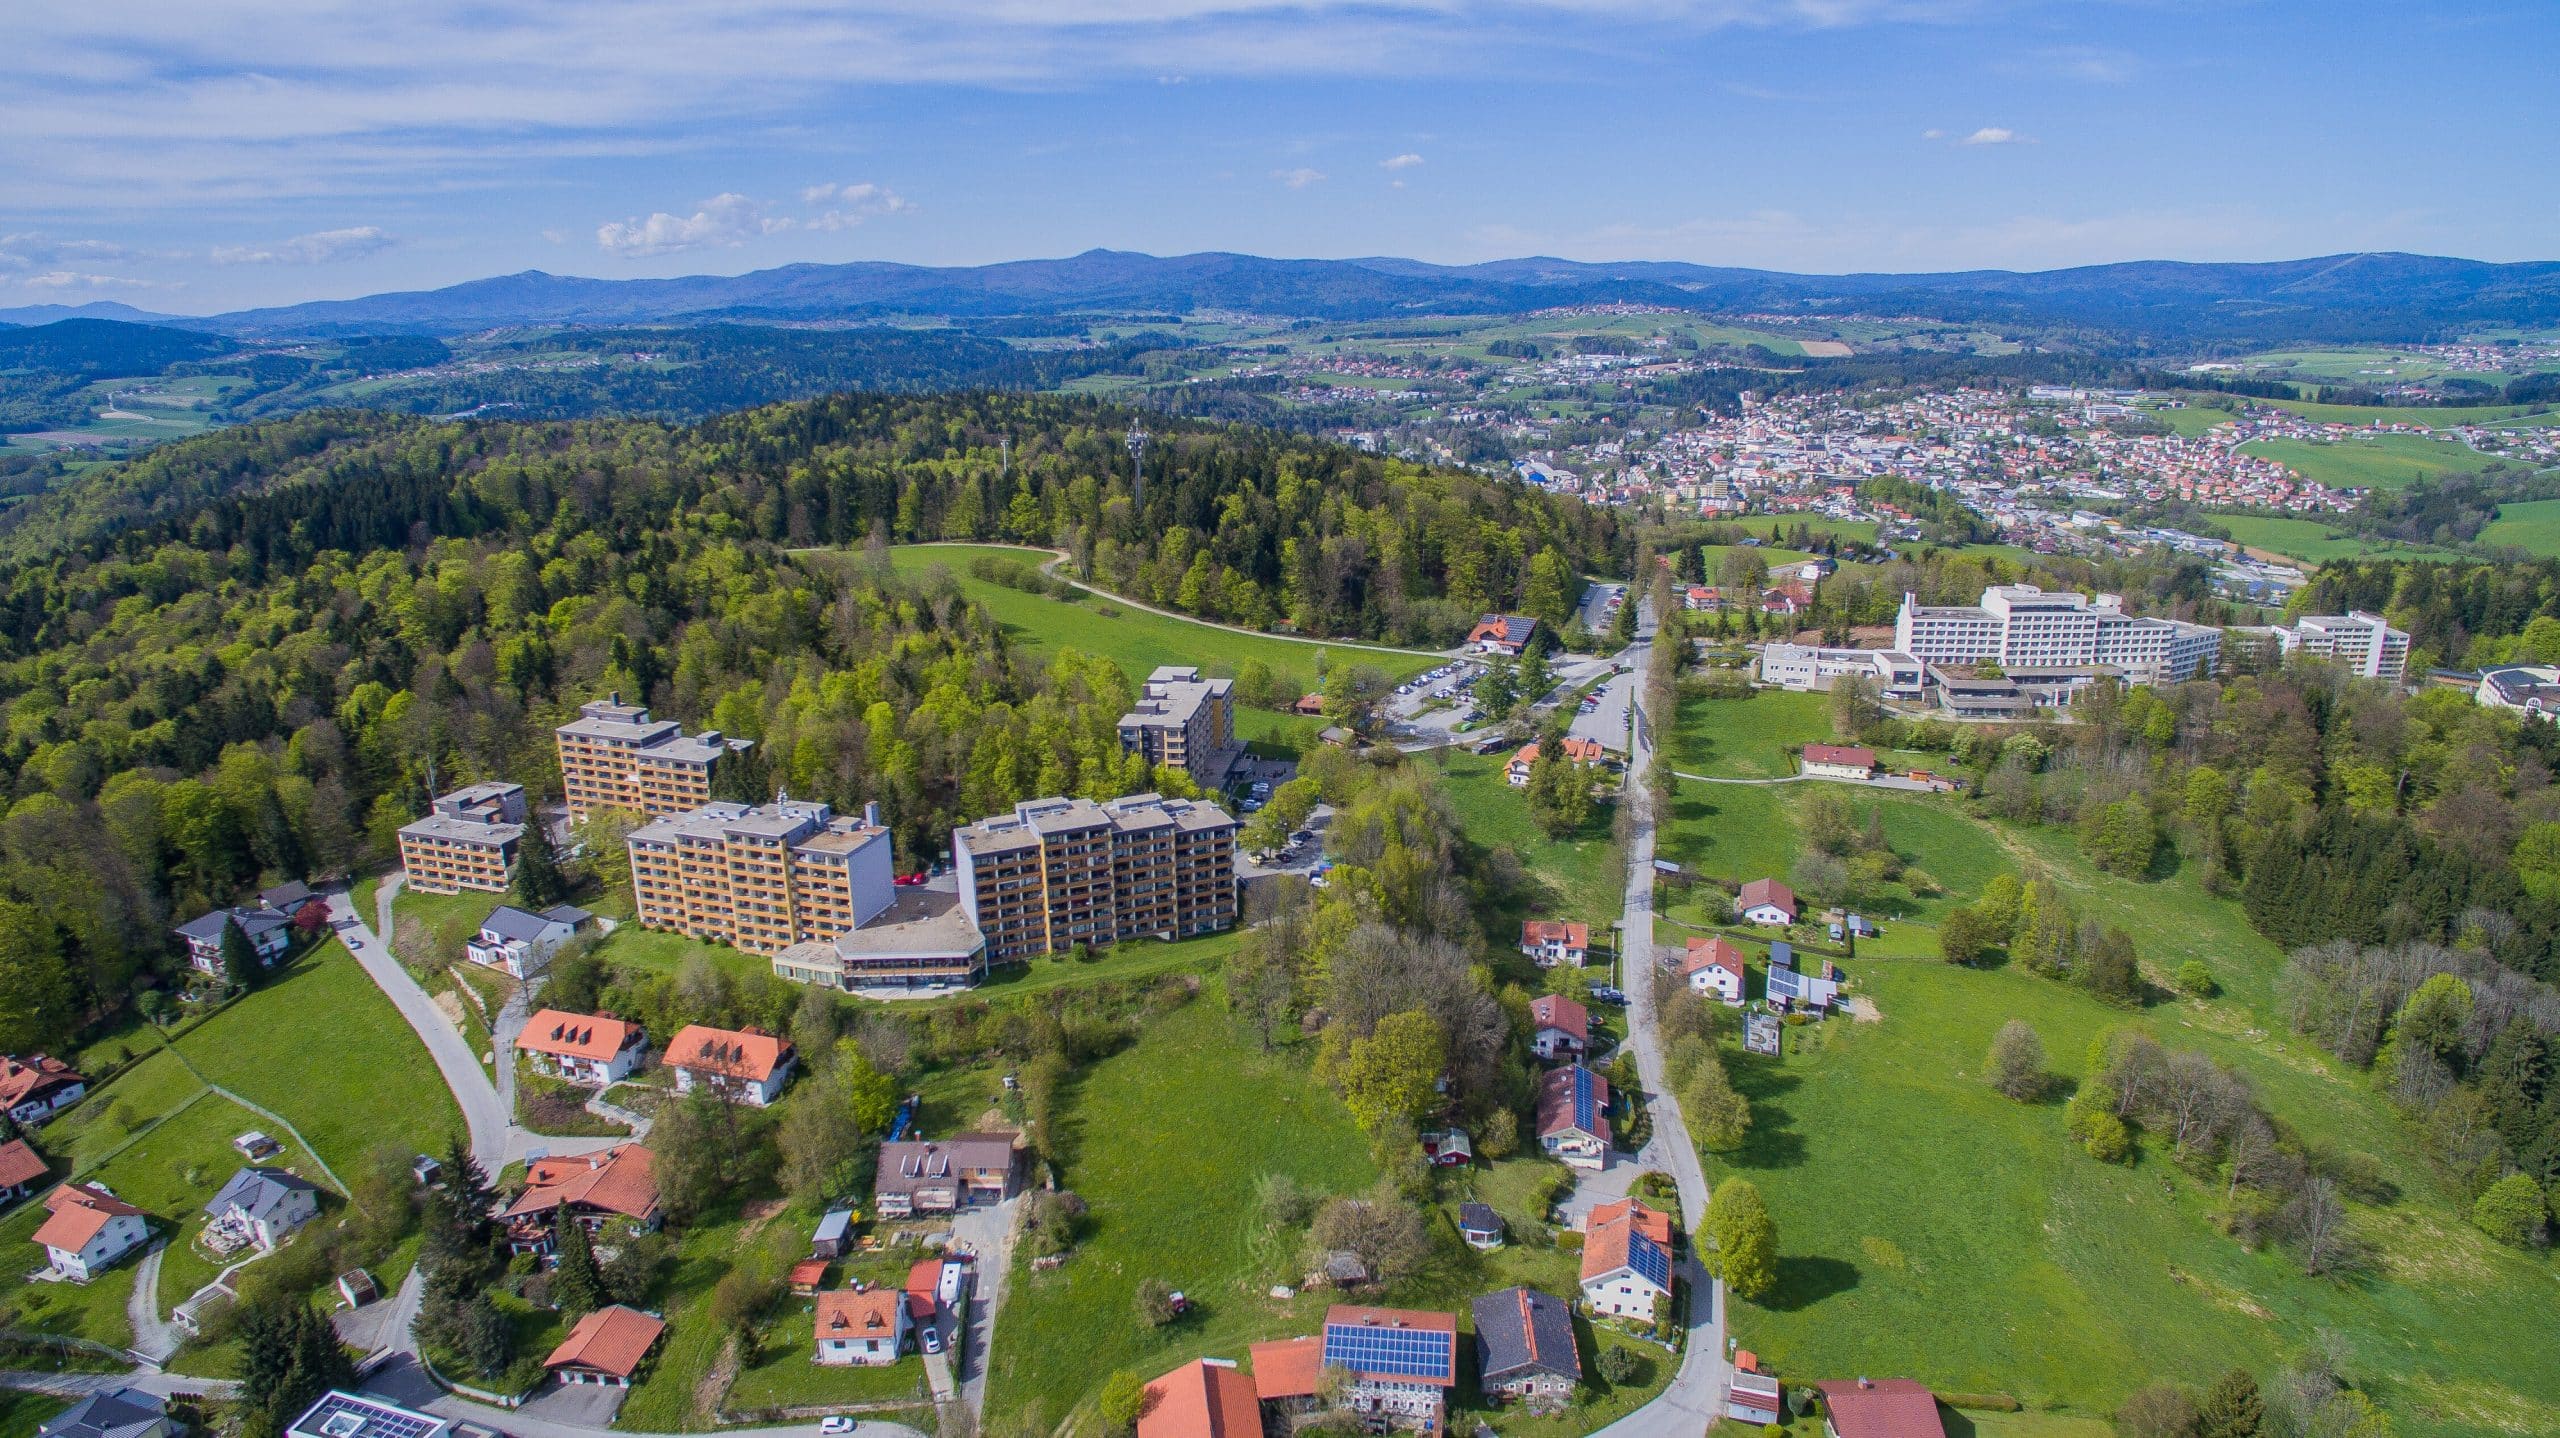 Luftaufnahme von Geyersberg, in der 2023 die Landesgartenschau Freyung stattfinden wird. Foto: © Freyung 2023 gGmbH